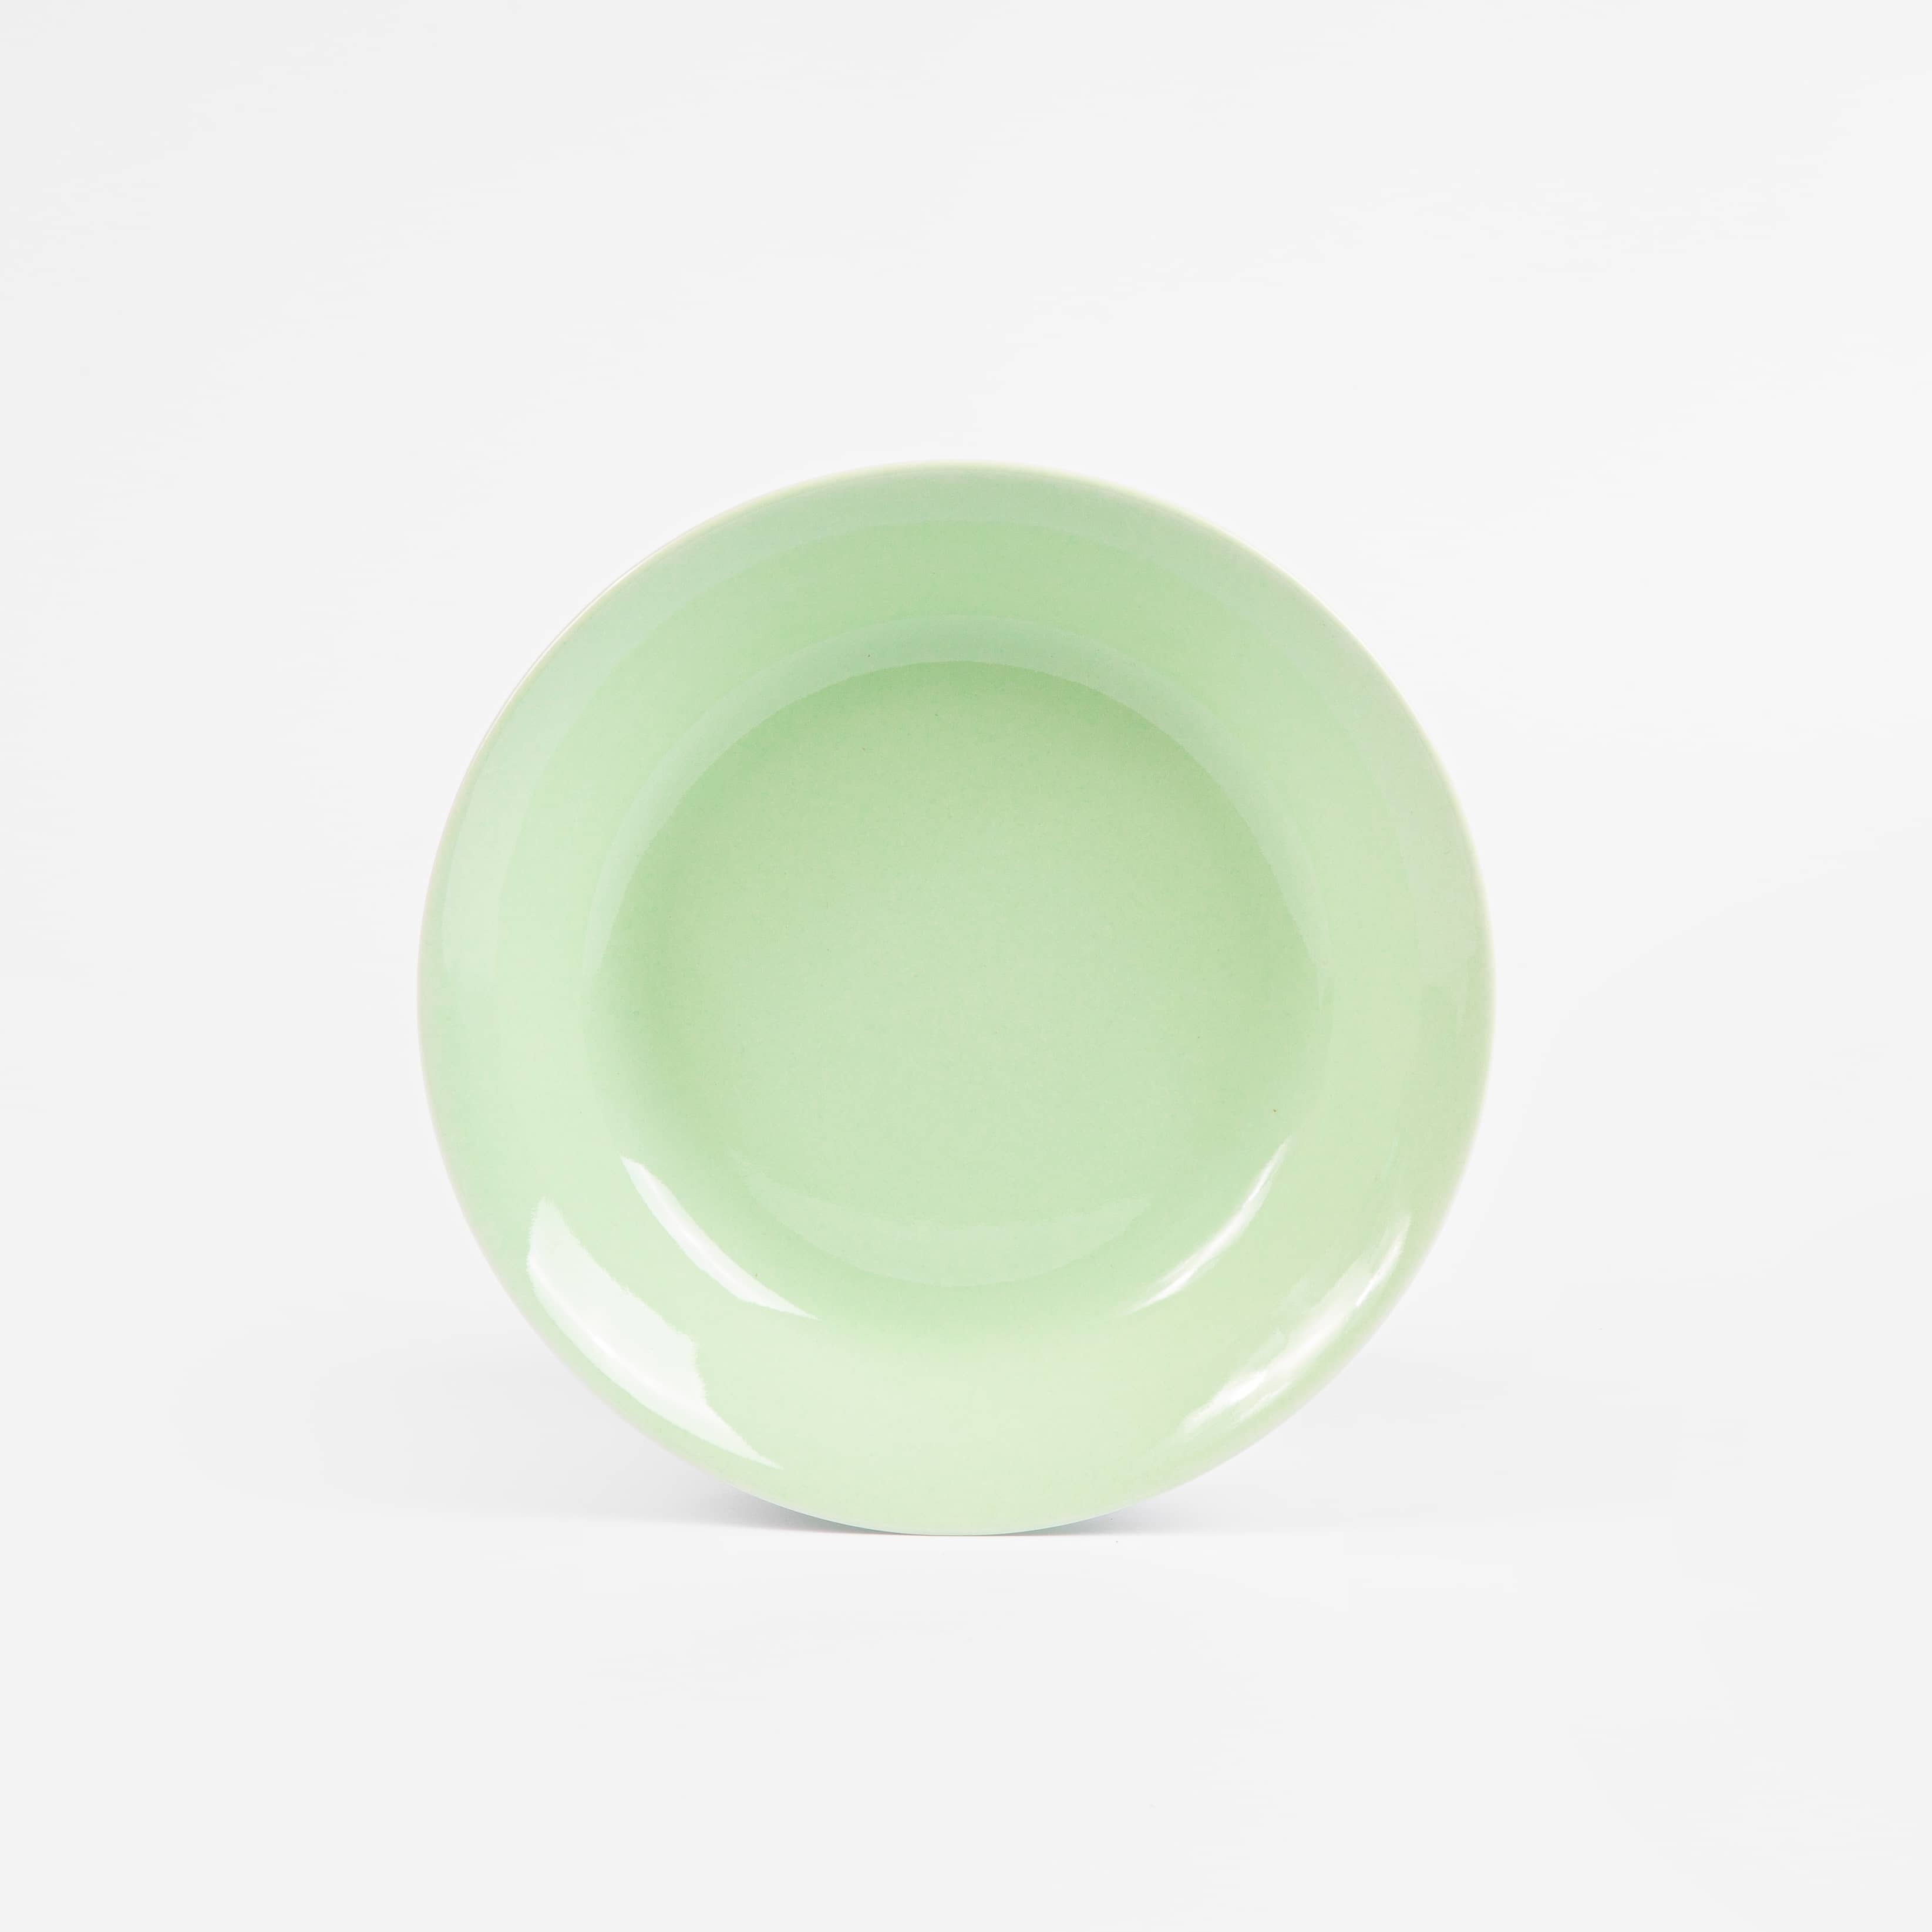 L'assiette creuse ronde en porcelaine - Verte amande - Essentielle